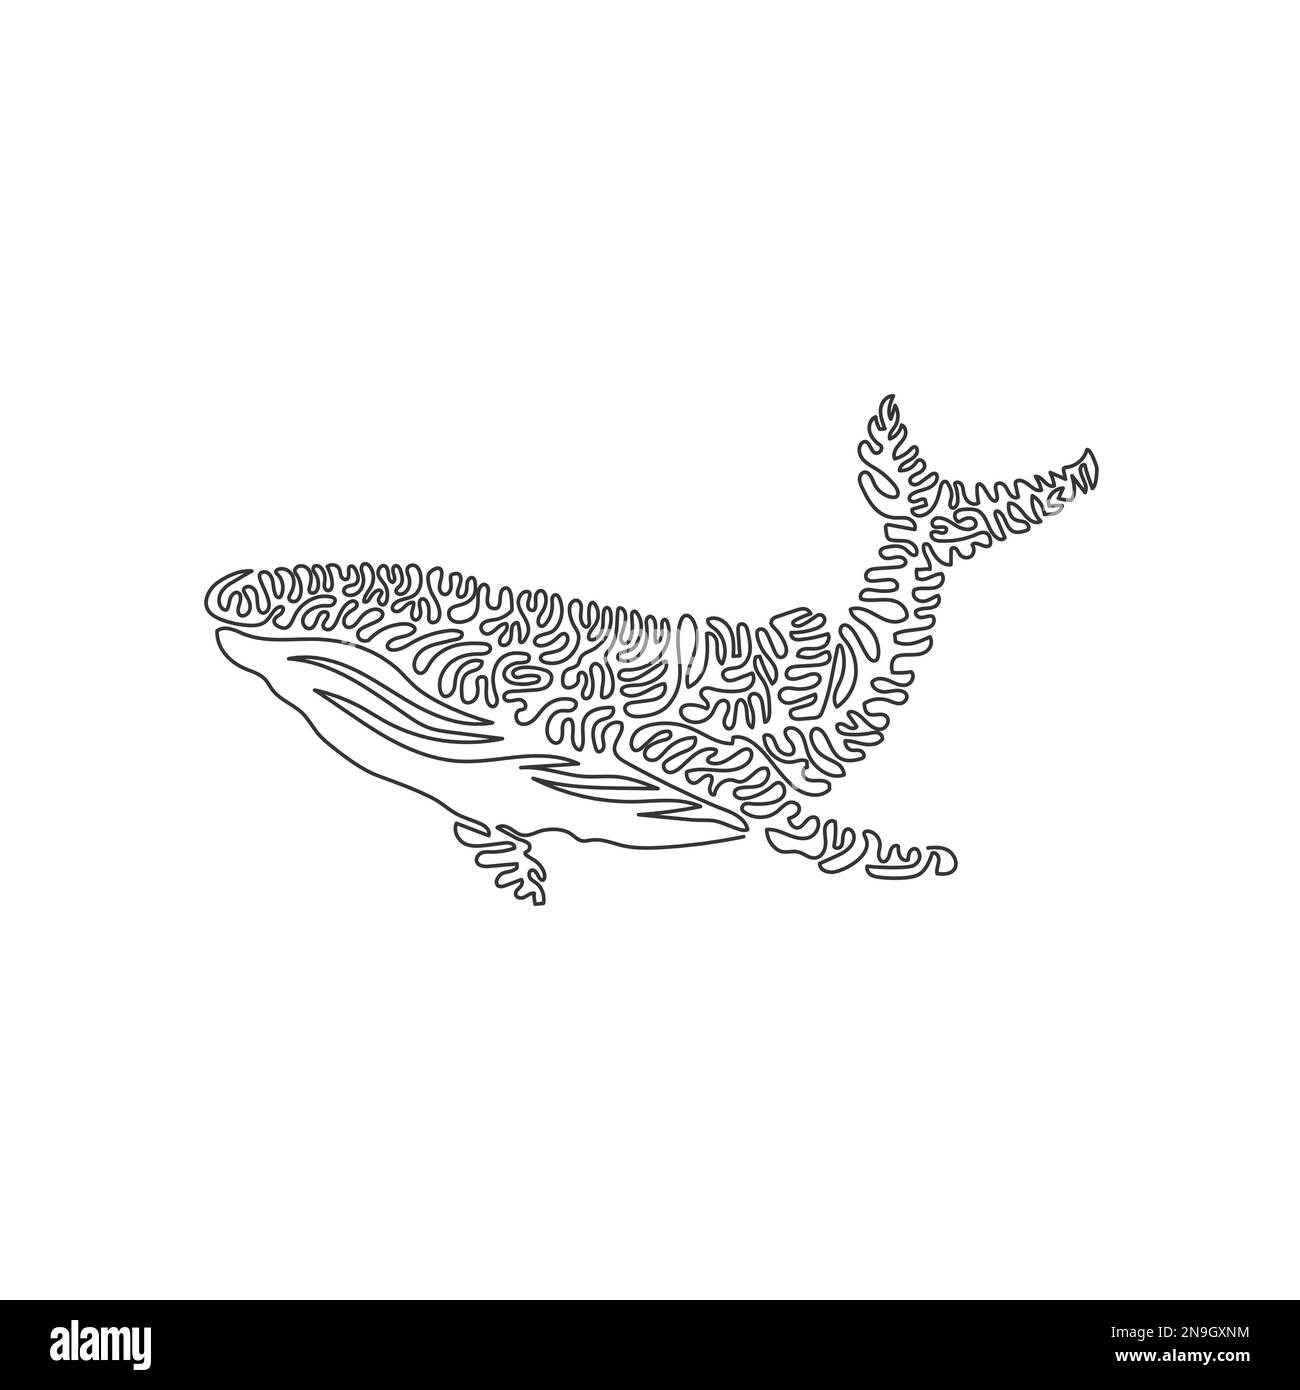 Eine einzelne geschwungene Zeichnung mit einer Linie von riesigen Walen abstrakter Kunst. Durchgehende Linienzeichnung als Designvektor Darstellung eines einzigartigen Meeressäugetieres für Icon Stock Vektor